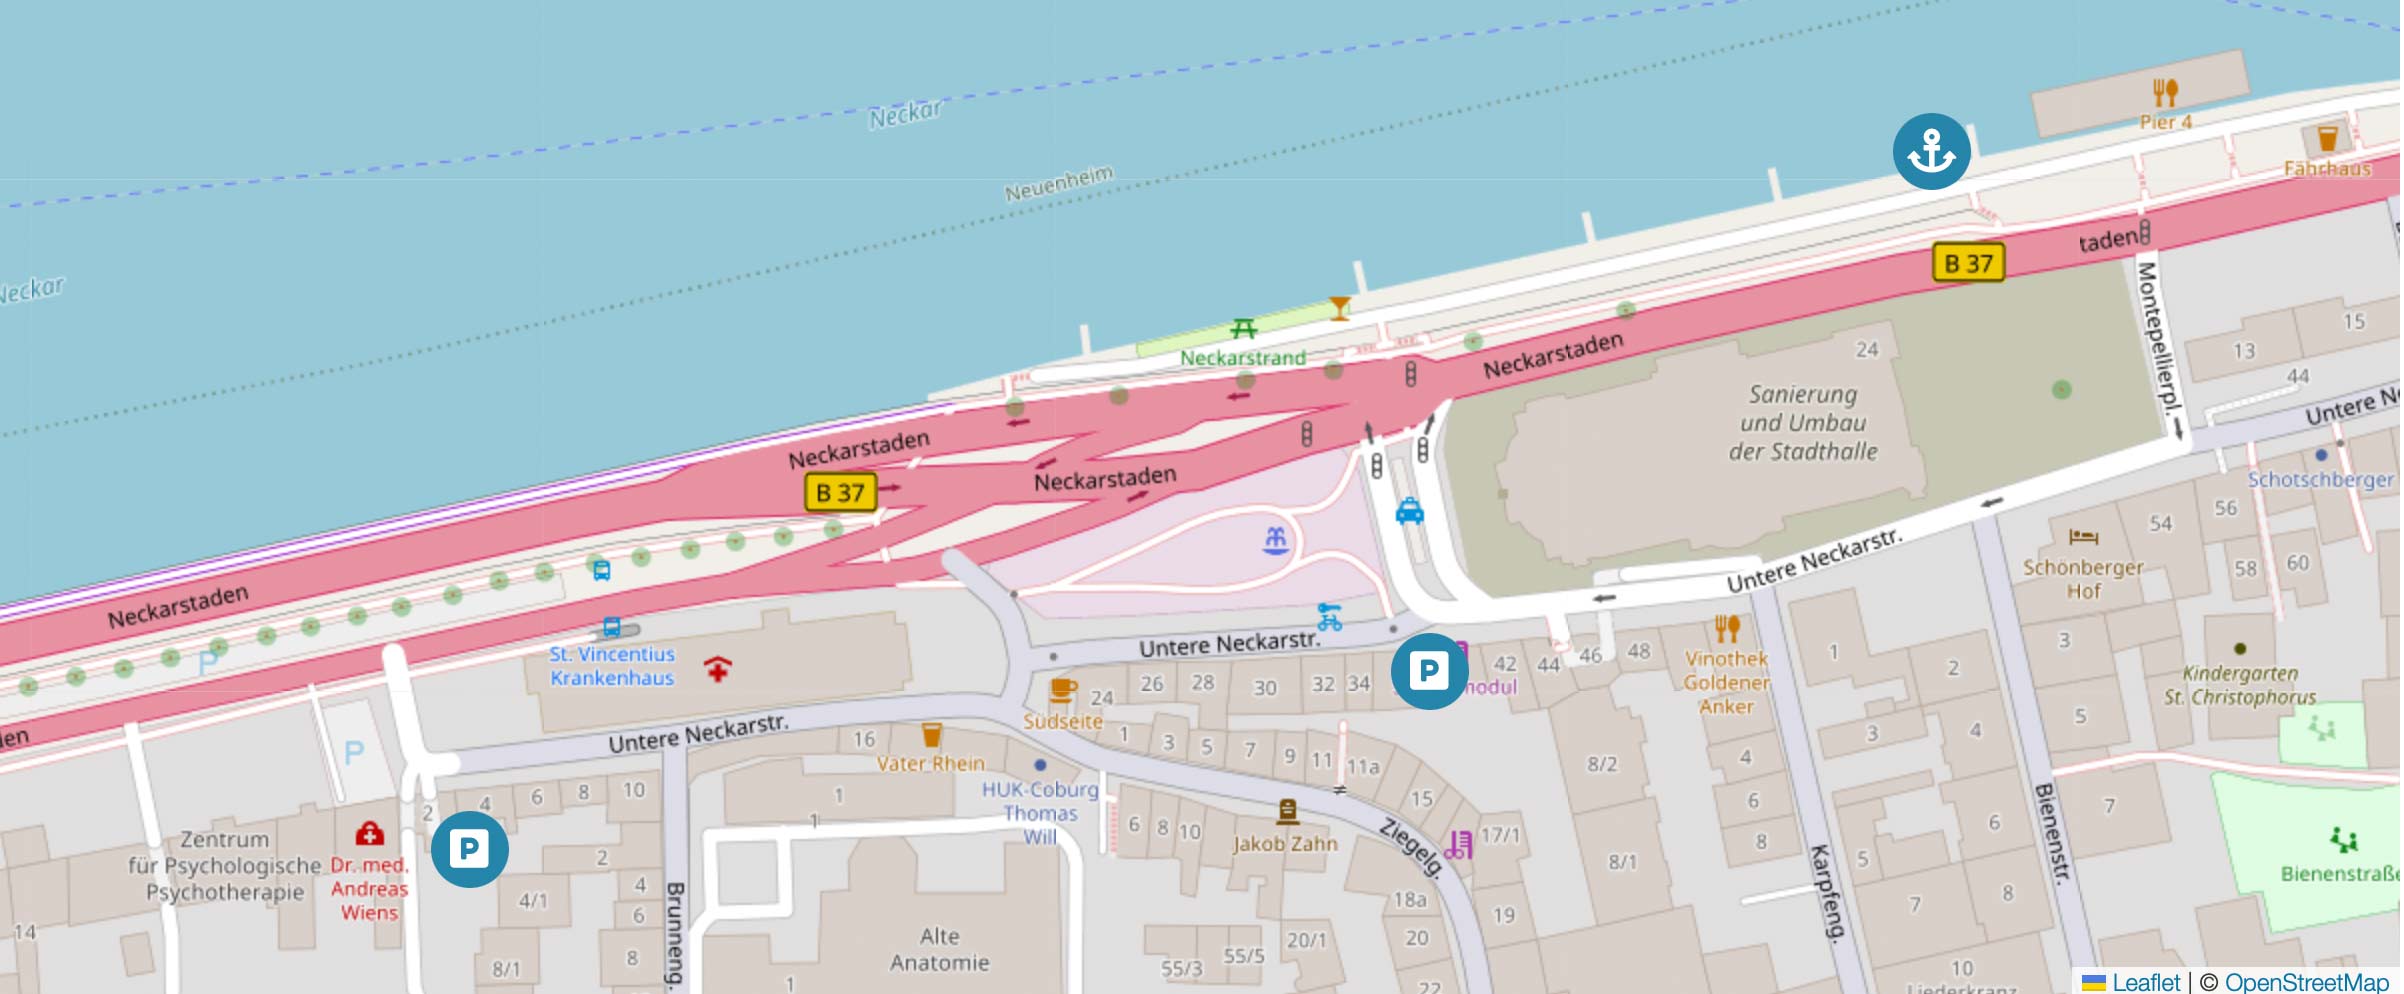 Die Karte zeigt die Parkmöglichkeiten vor einer Bootstour von Riverboat in Heidelberg